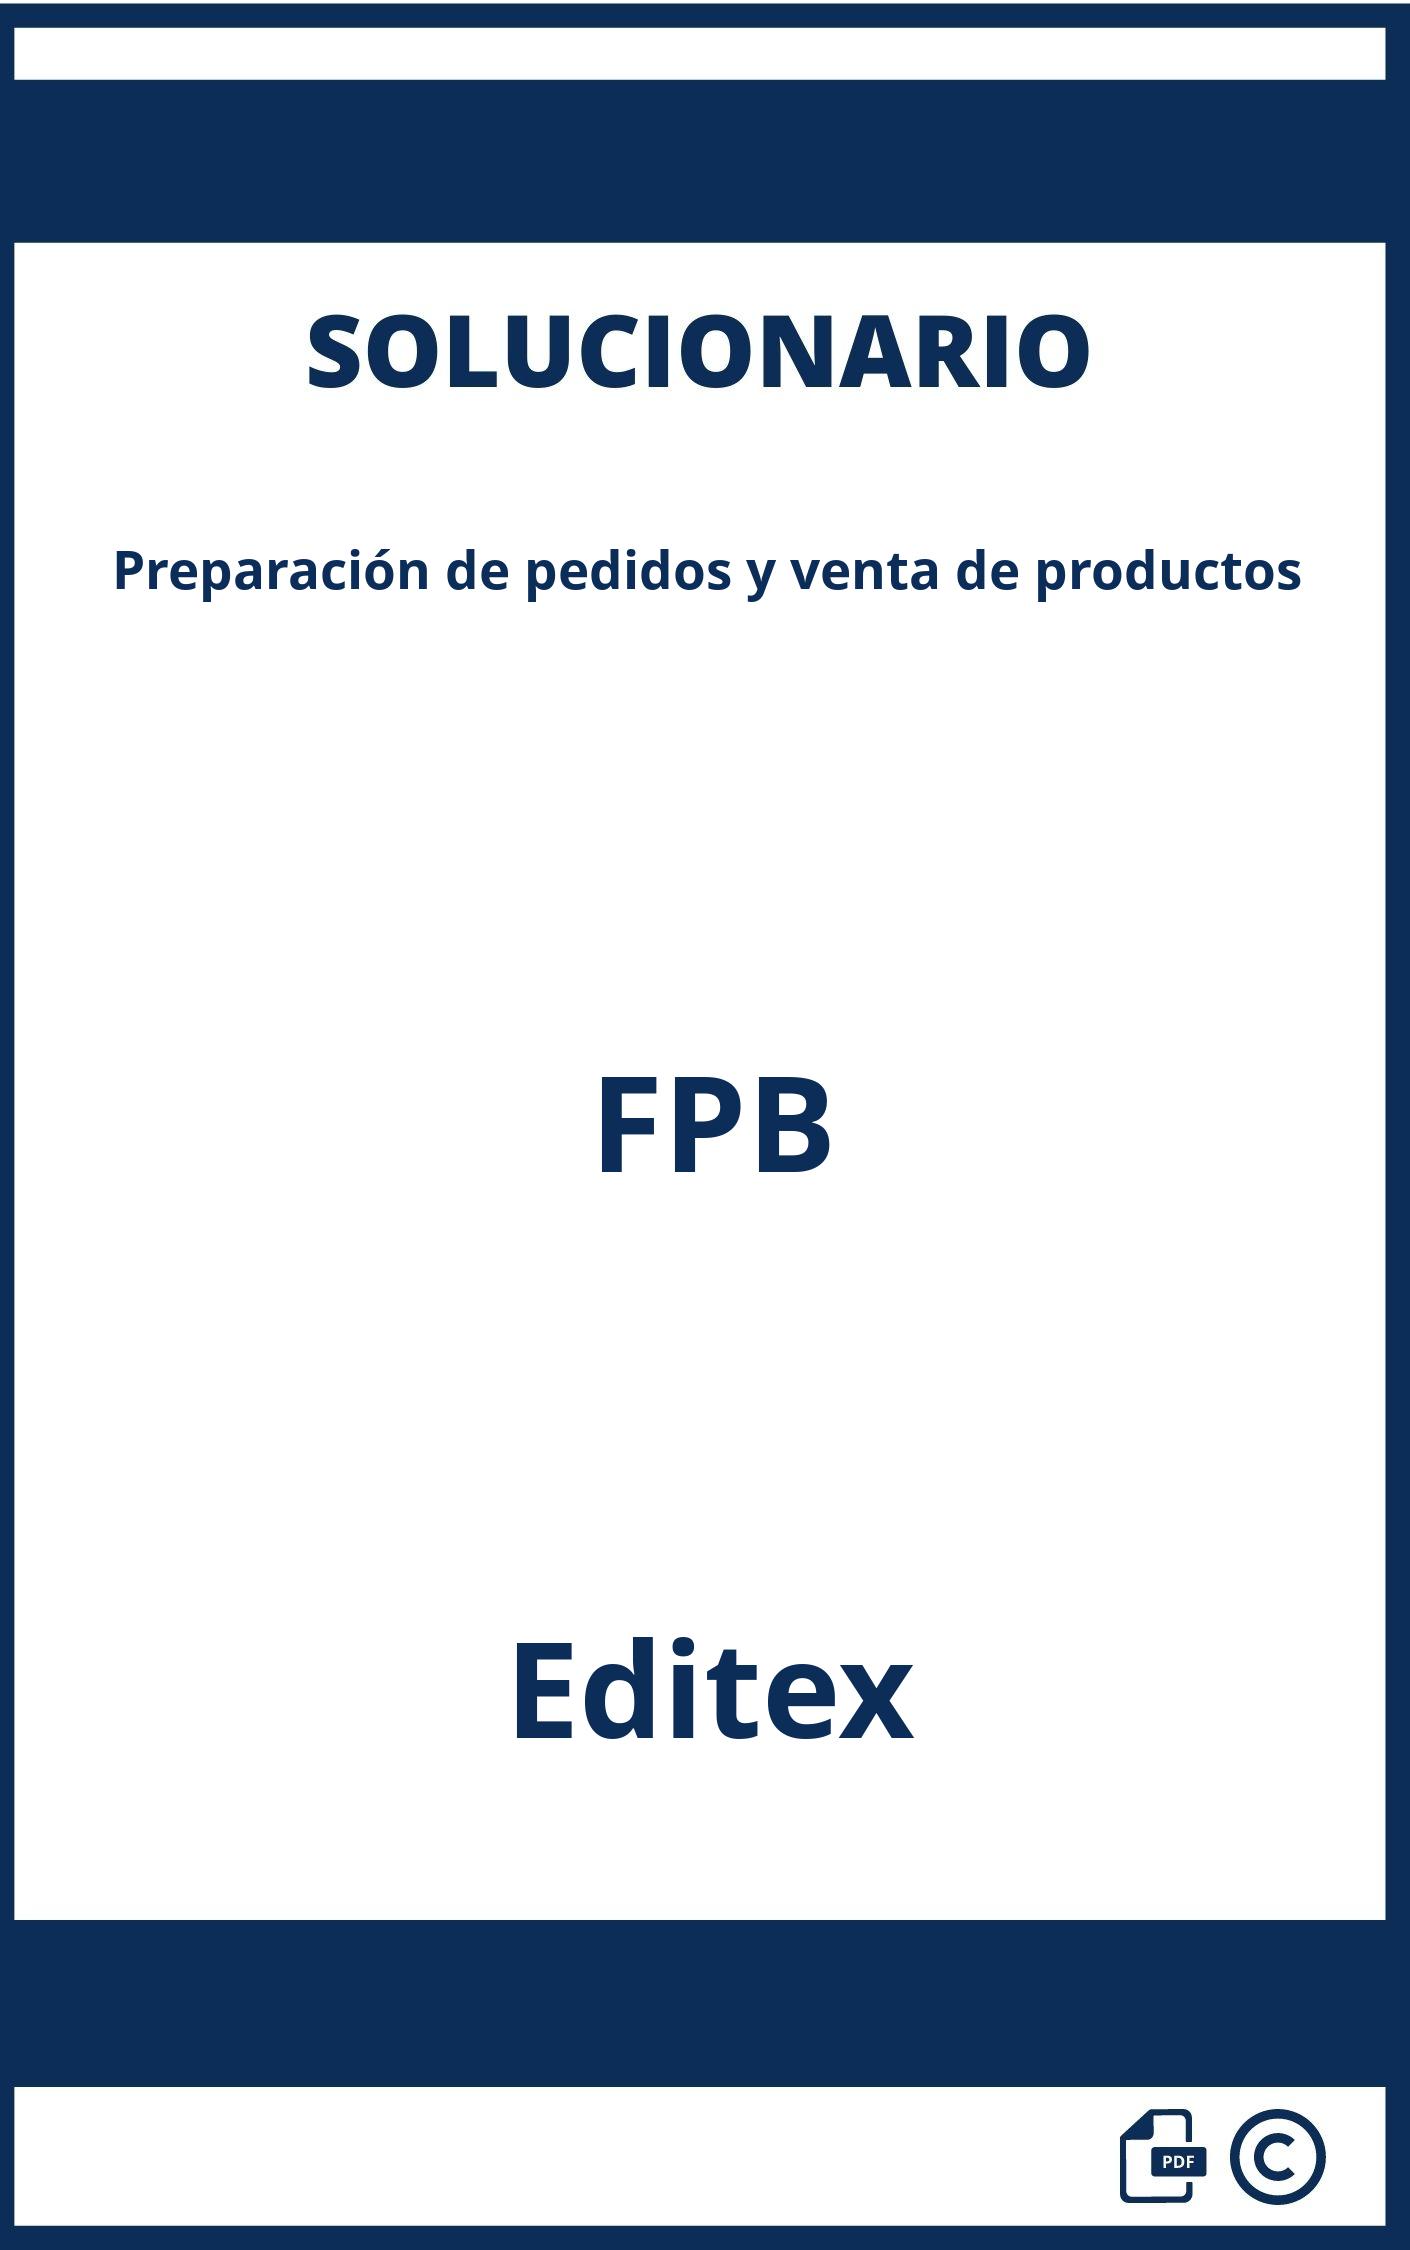 Solucionario Preparación de pedidos y venta de productos FPB Editex